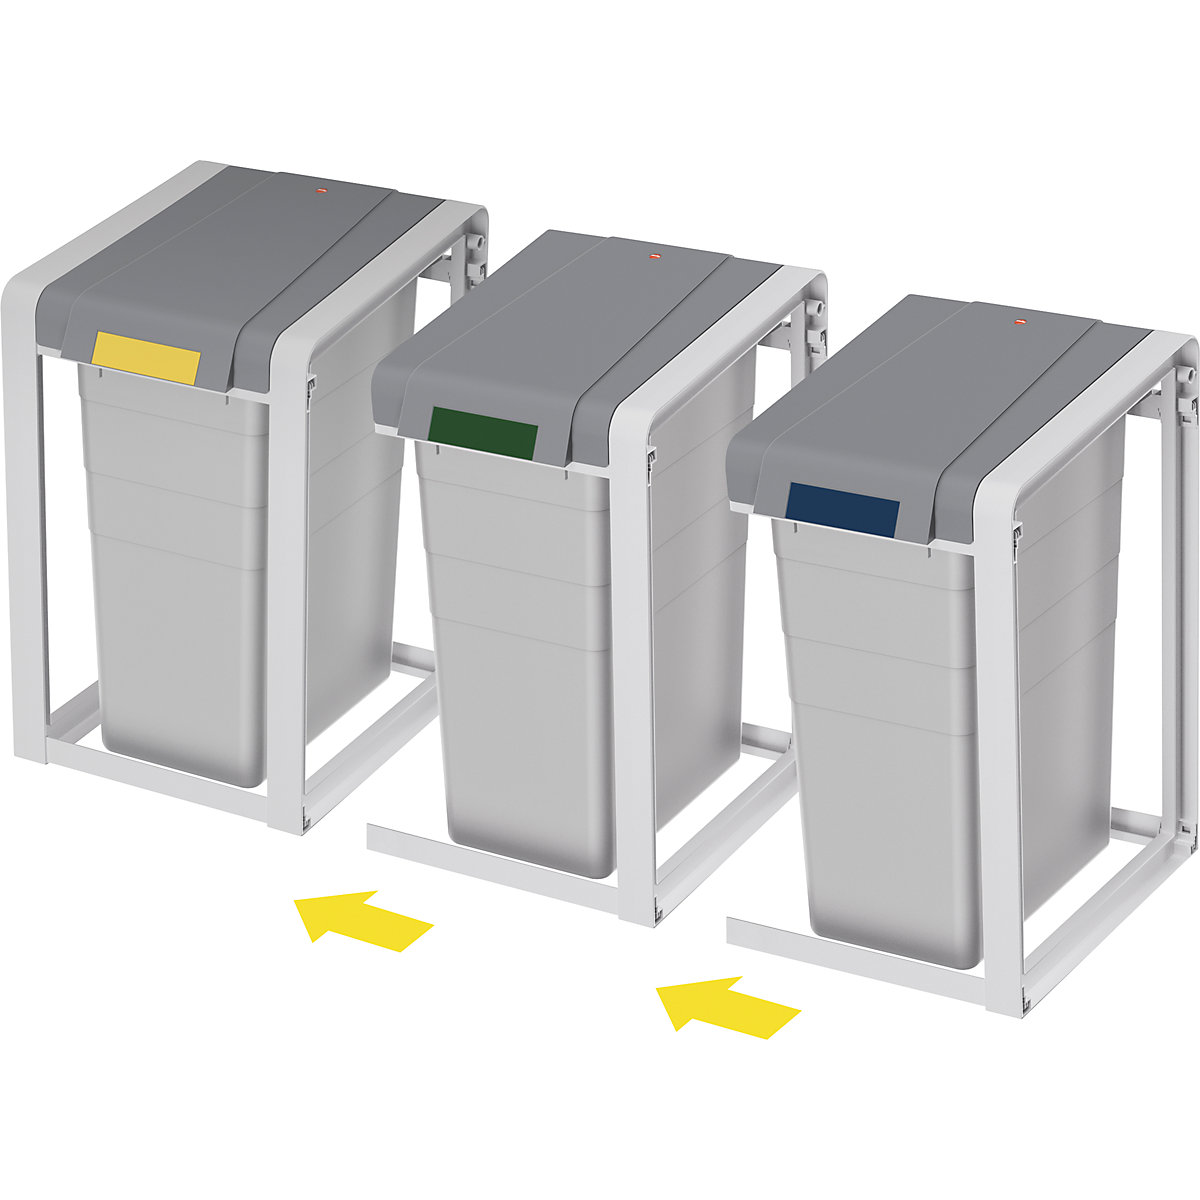 Sistema modular de recipientes para separar materiales ProfiLine, ecológico y flexible – Hailo (Imagen del producto 11)-10